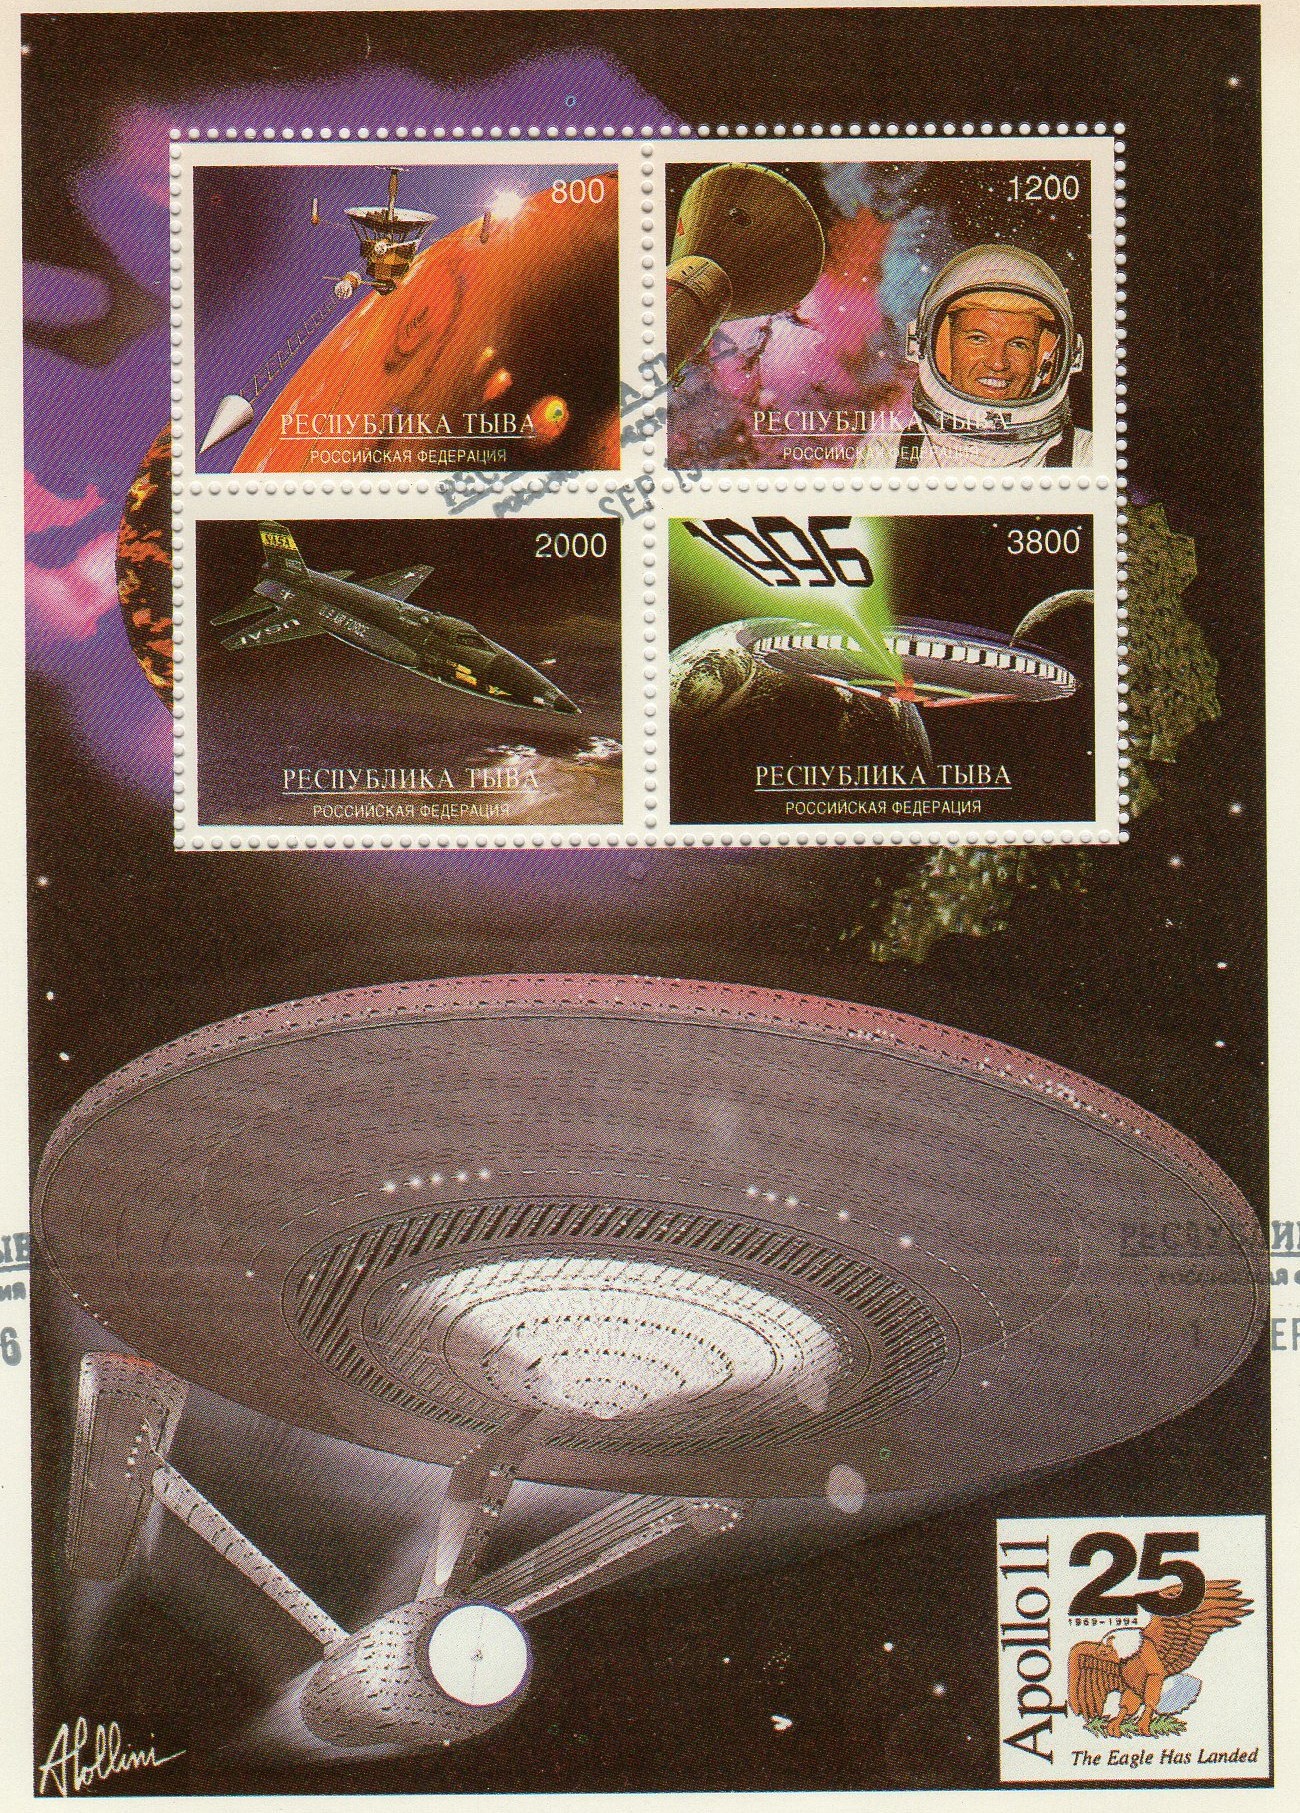 Star Trek stamps from Tuva